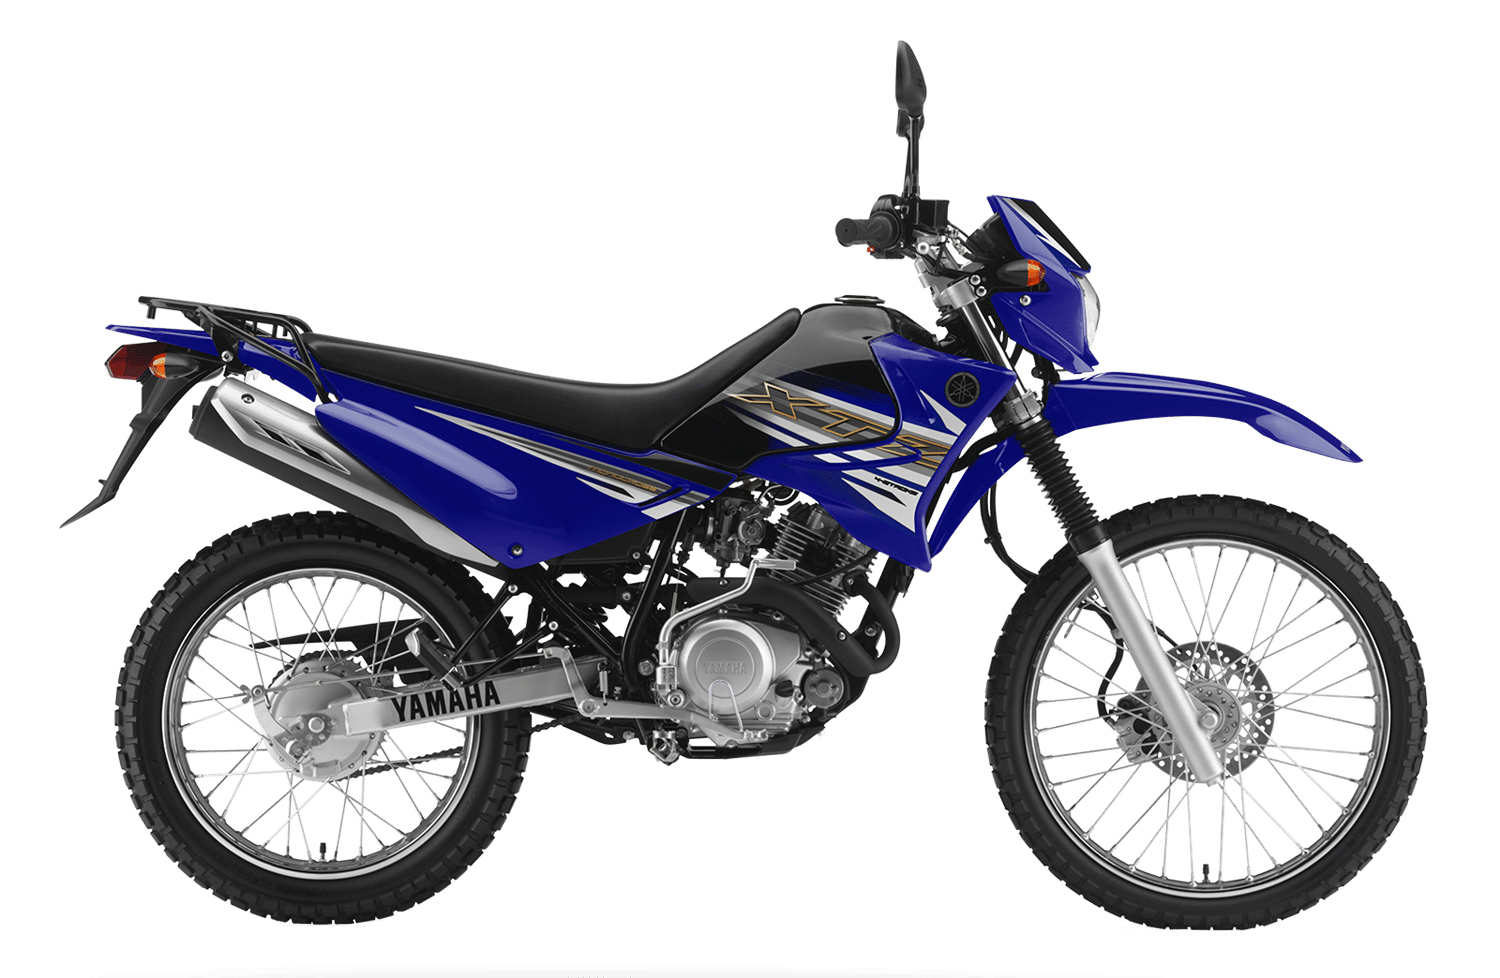 Yamaha XTZ 125 Spotted Testing In India | BikeDekho